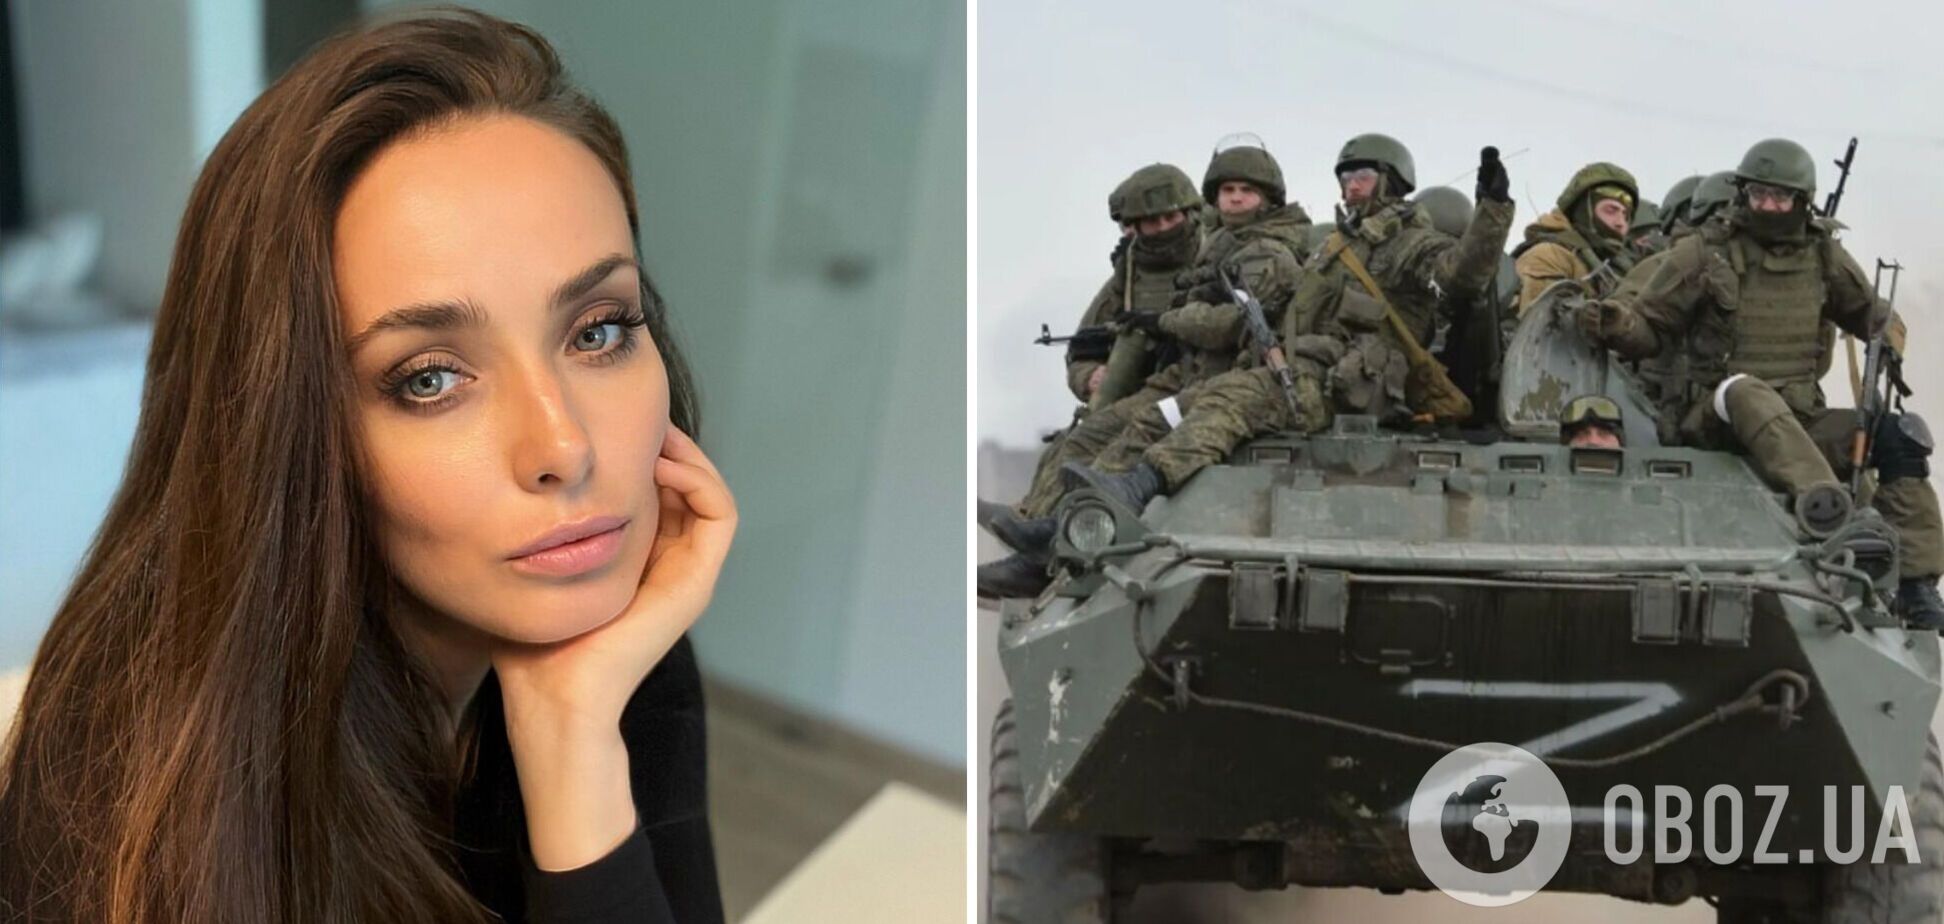 Ксения Мишина рассказала, как для нее началась война: за спиной раздавались взрывы